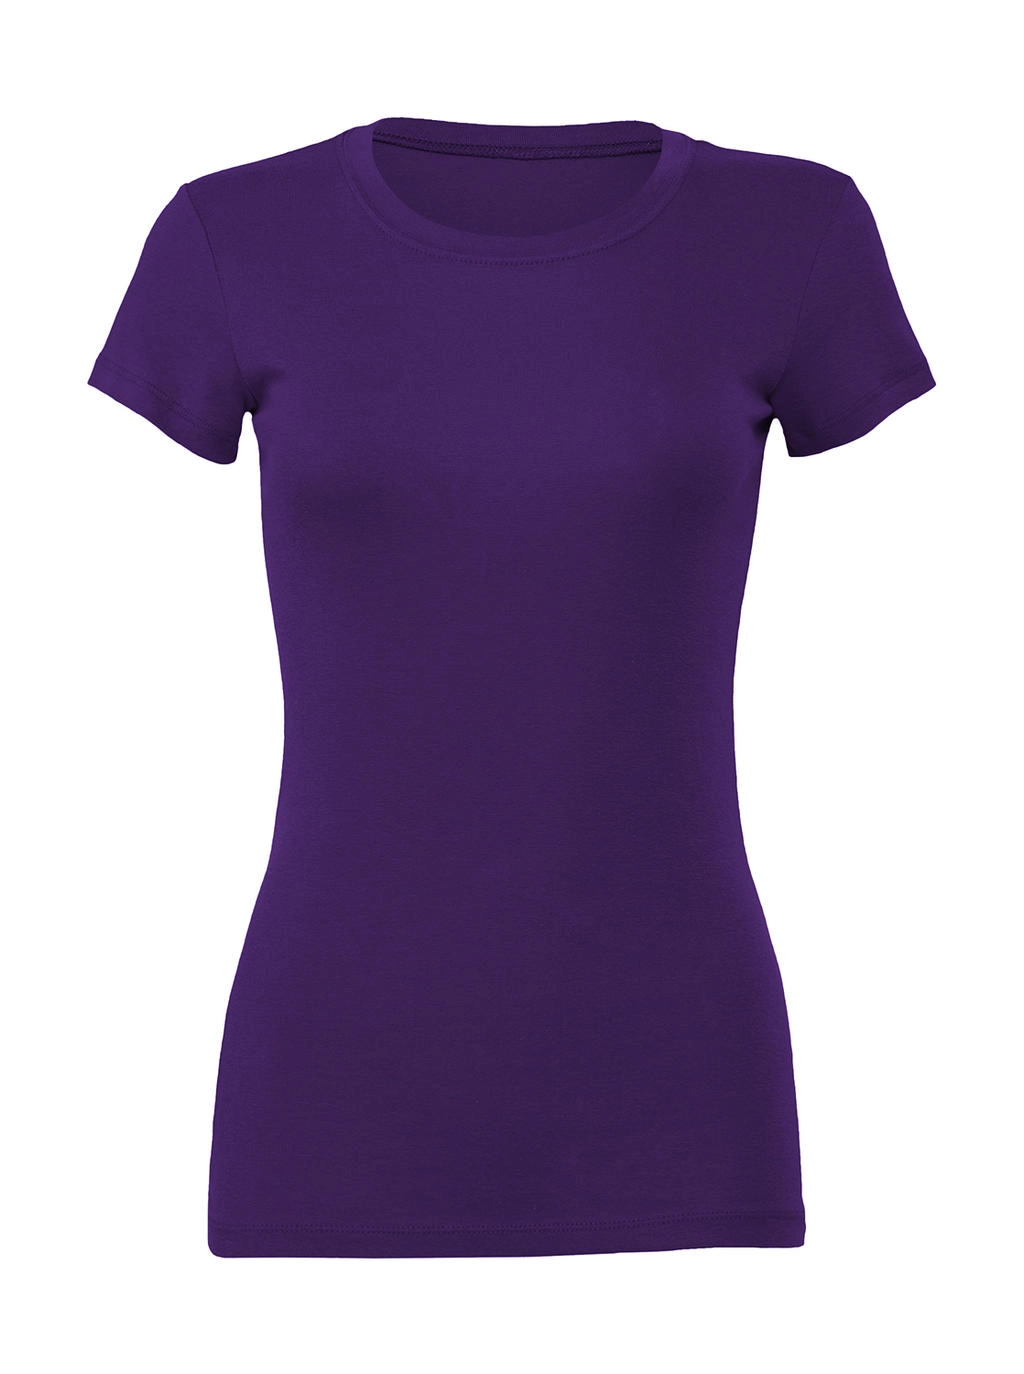 The Favorite T-Shirt zum Besticken und Bedrucken in der Farbe Team Purple mit Ihren Logo, Schriftzug oder Motiv.